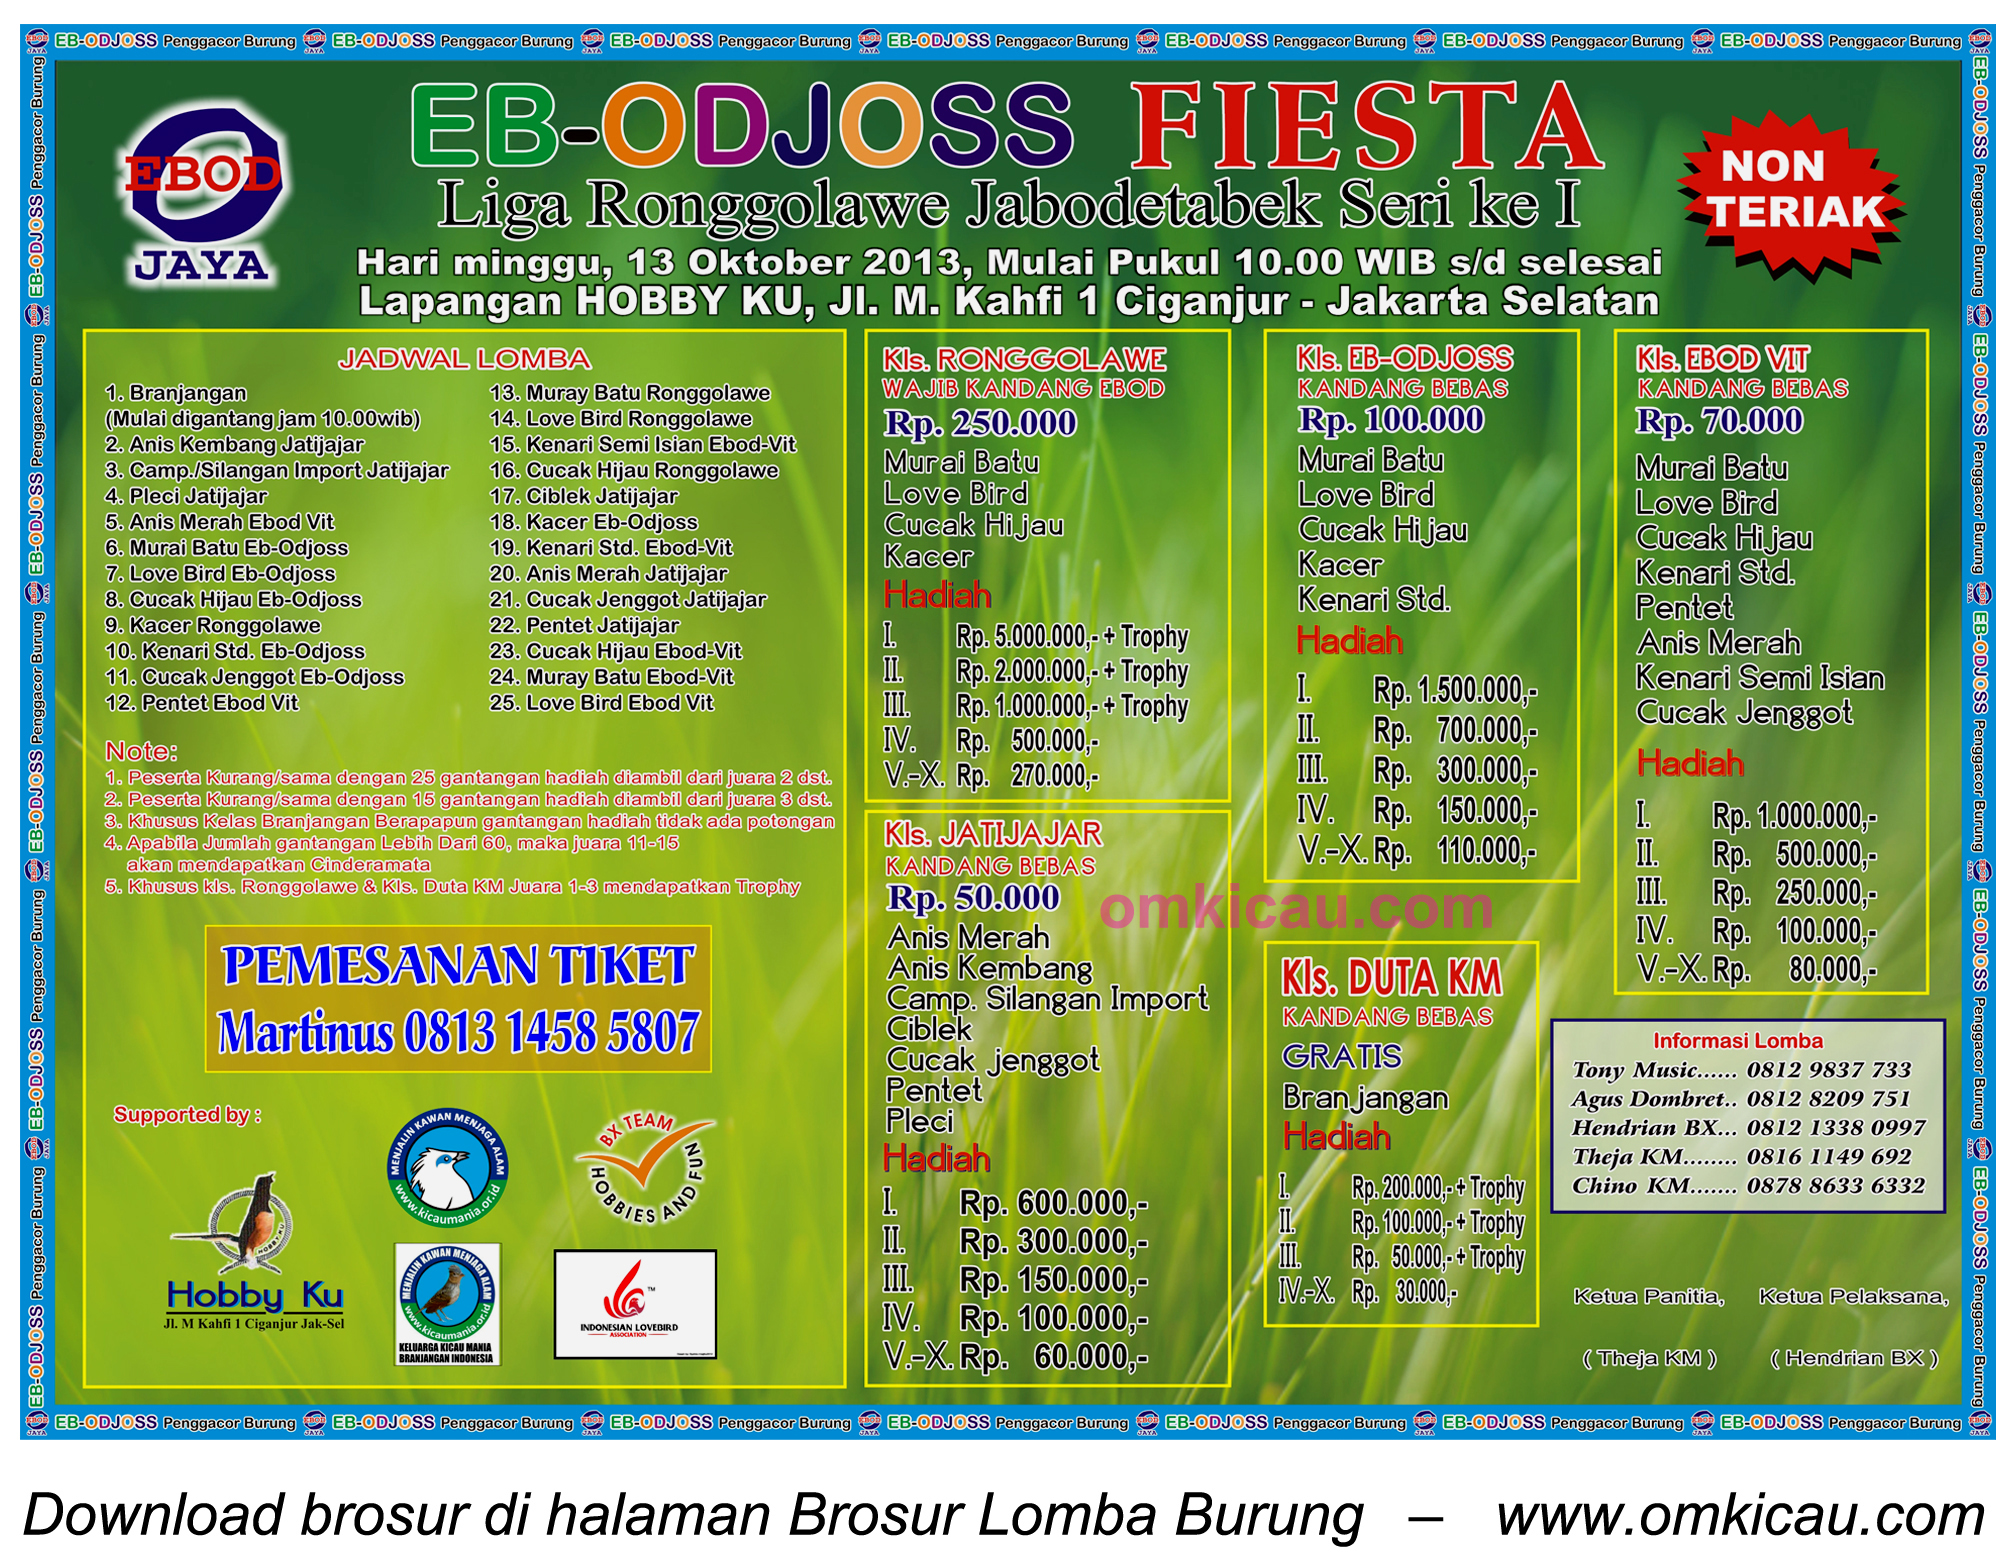 Brosur Lomba Burung EB-Odjoss Fiesta - Jakarta - 13 Oktober 2013